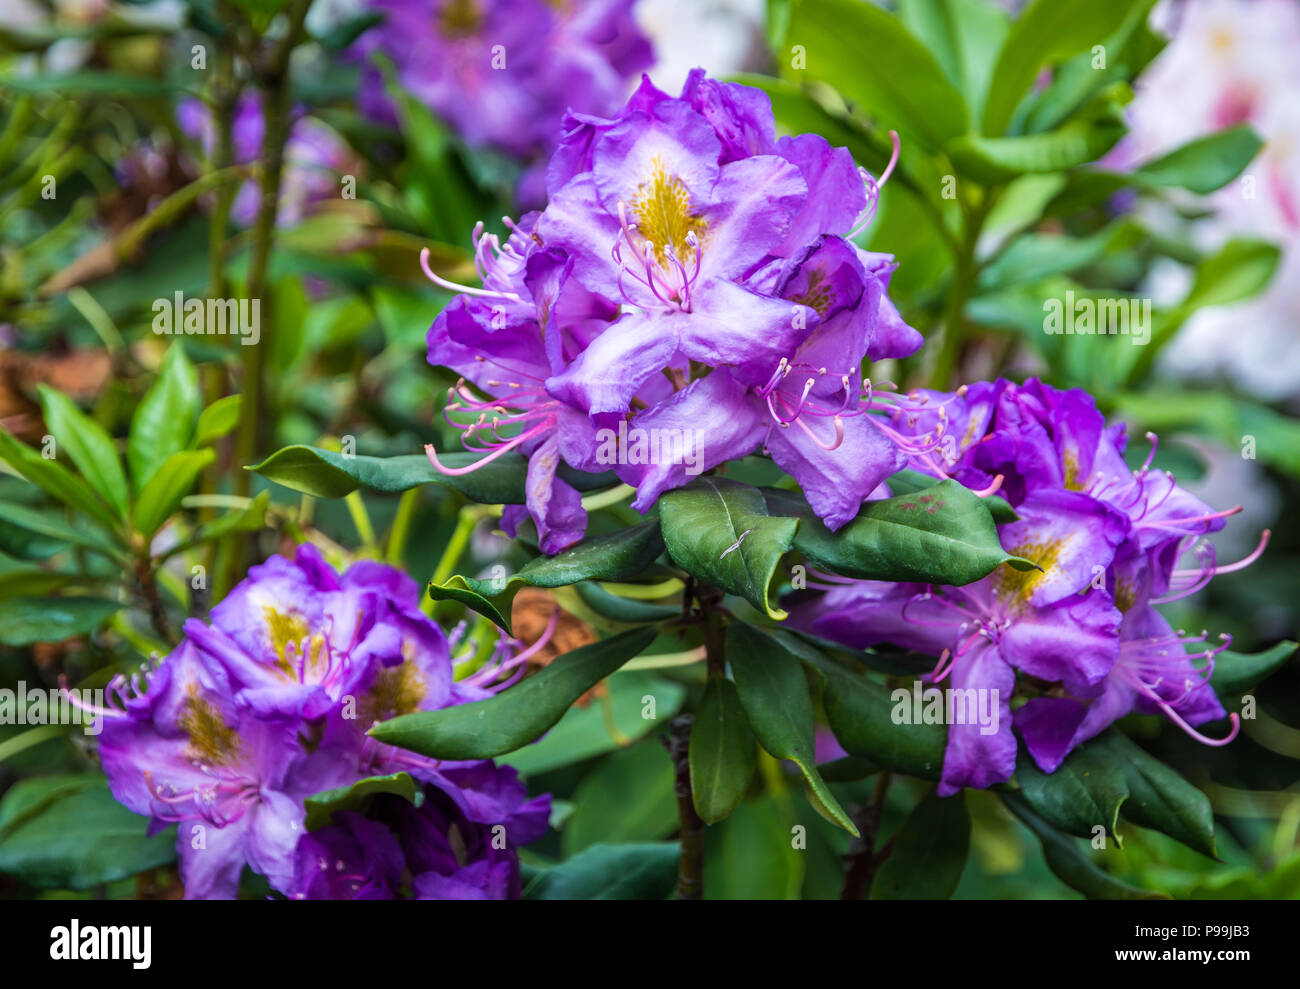 Rhododendron Baum Blumen. (Rhododendron arboreum). Blue Baron Blumen der Rhododendrum Baum. Lila Blüten fo Rhododendron Baum. Stockfoto